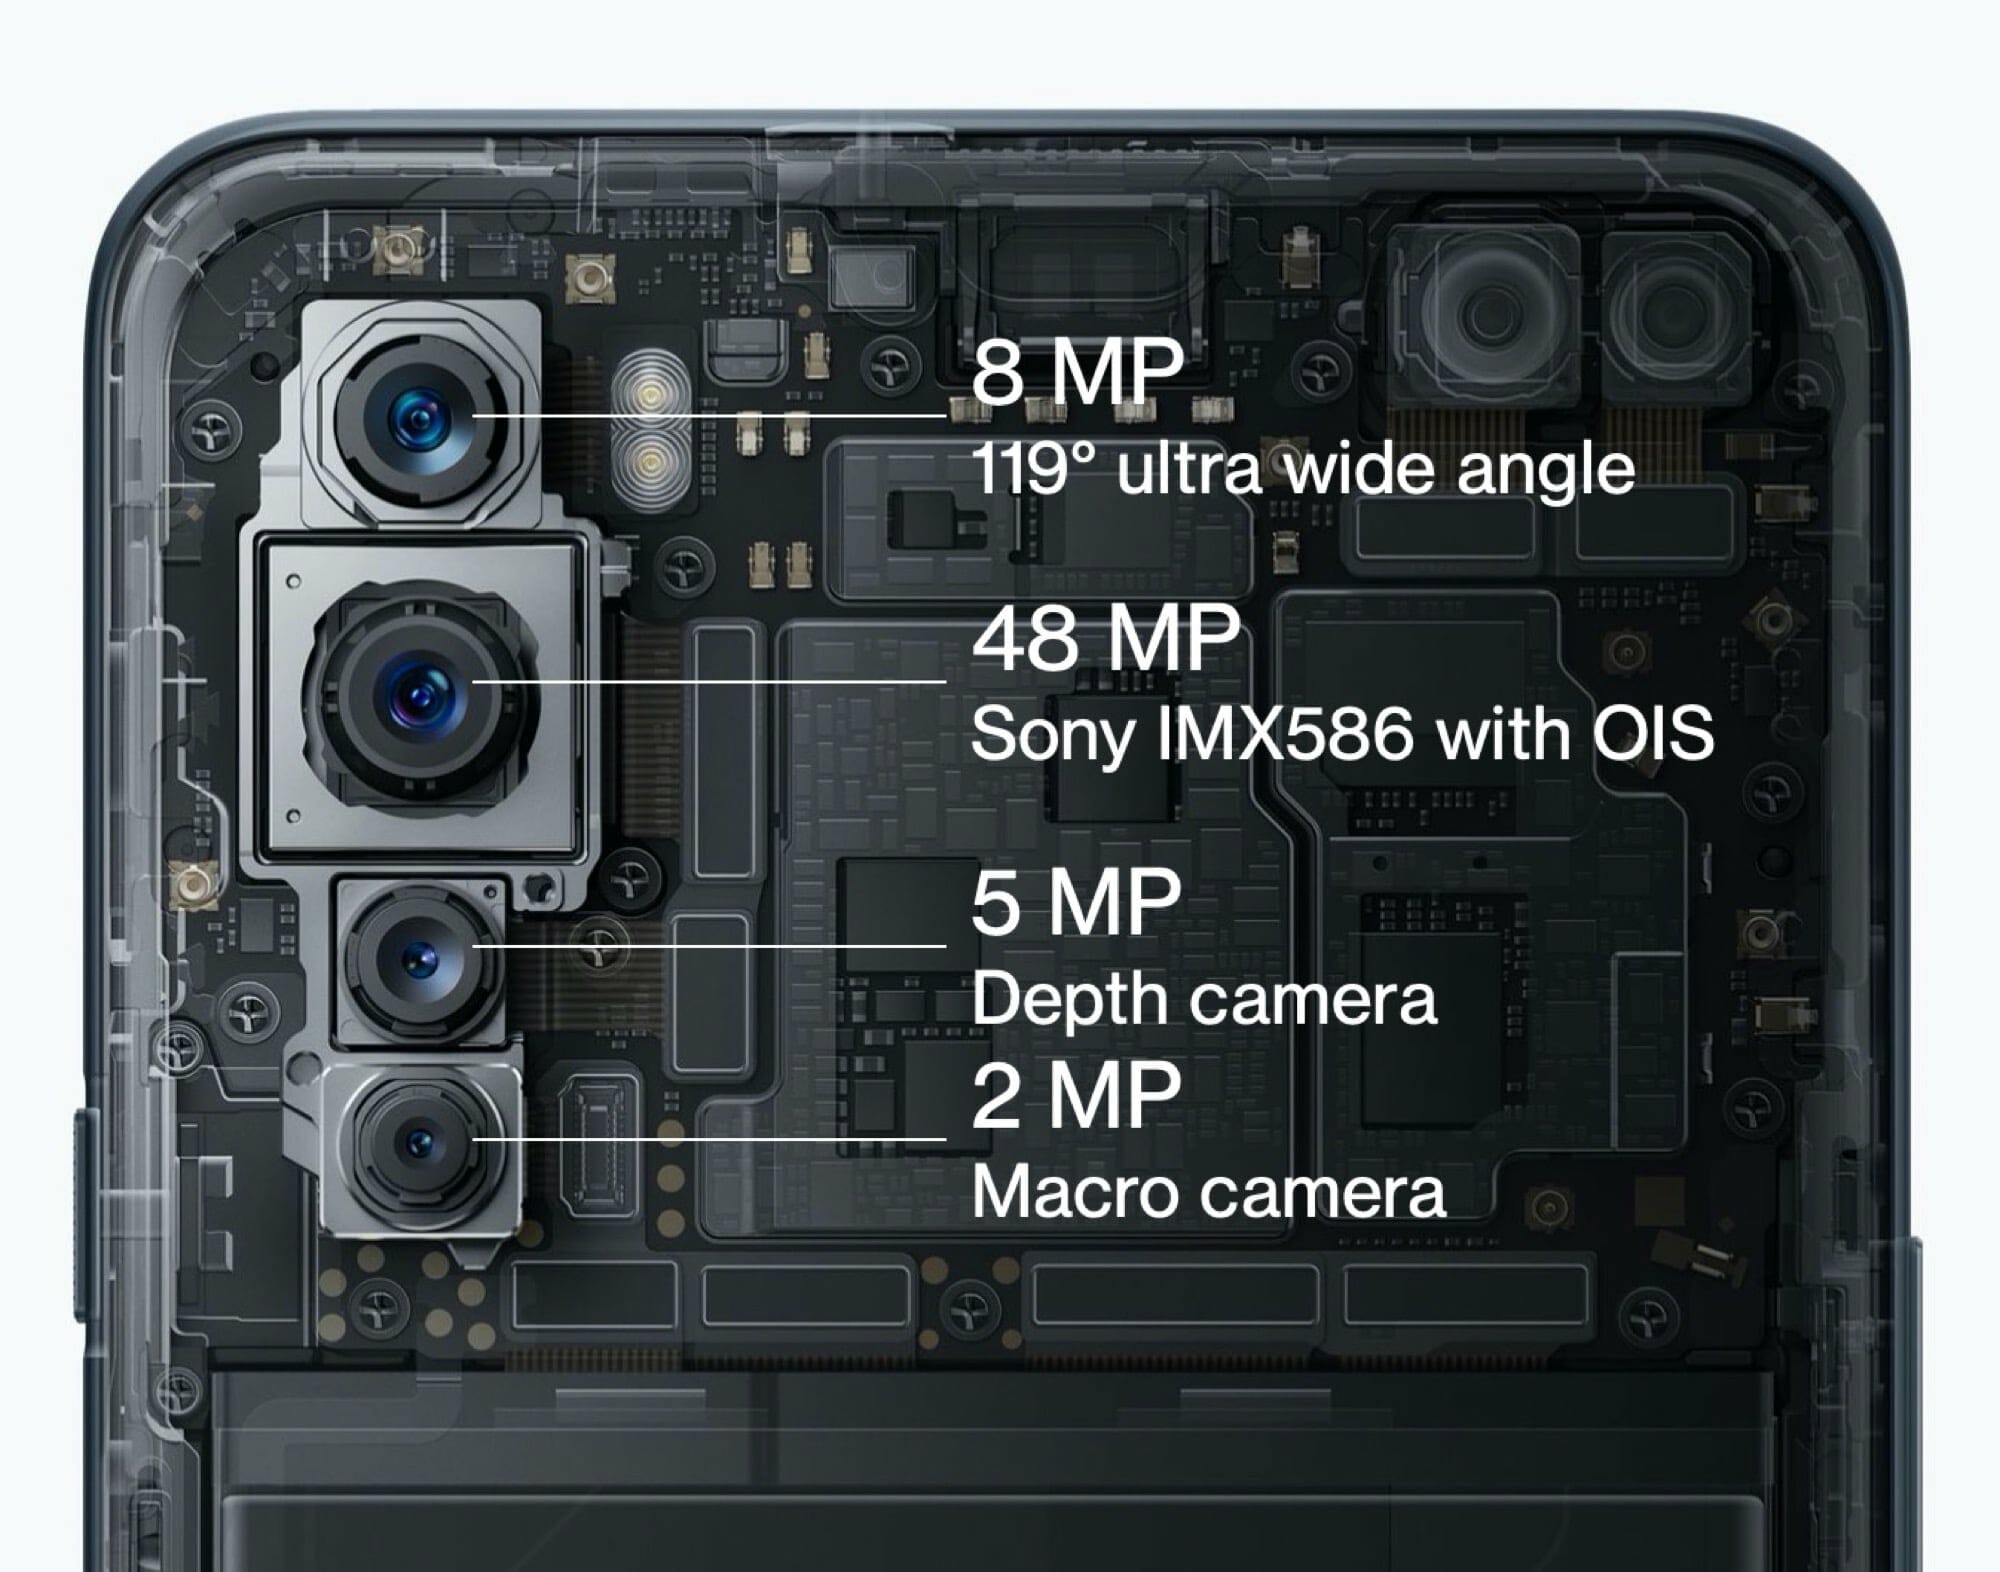 รีวิว OnePlus Nord สมาร์ทโฟนราคากลางๆ แต่มอบประสบการณ์ระดับเรือธง ด้วยจุดเด่นด้าน Software ที่ดีมาก 31